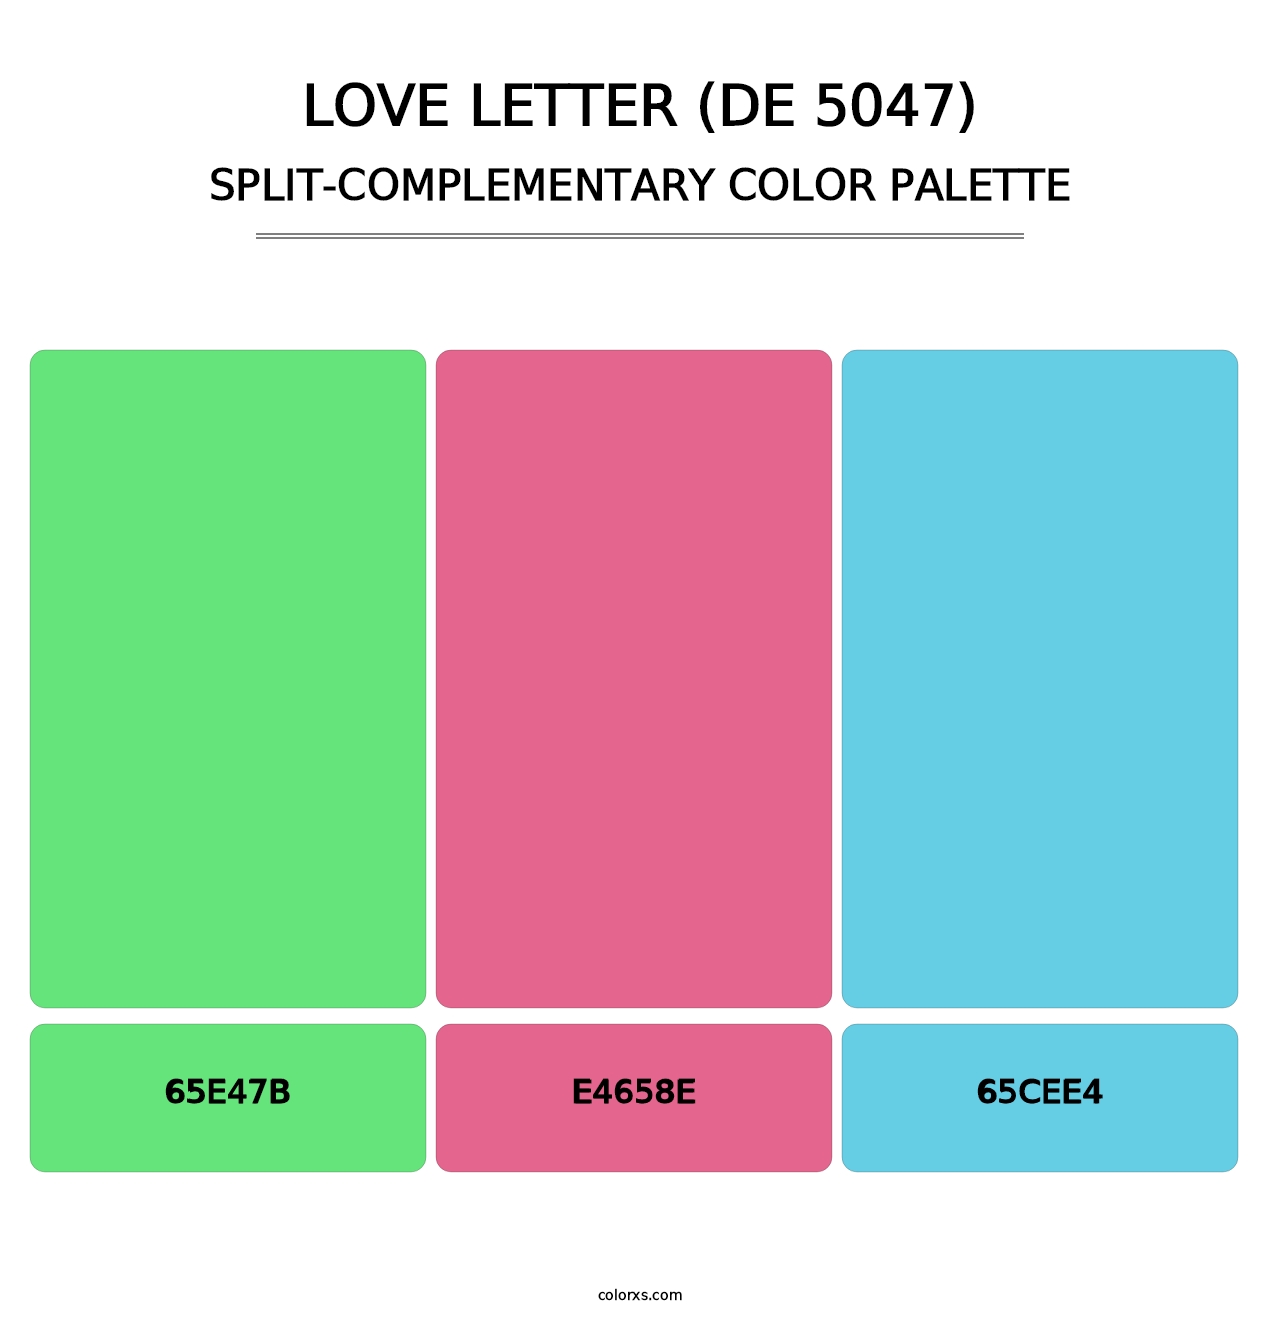 Love Letter (DE 5047) - Split-Complementary Color Palette